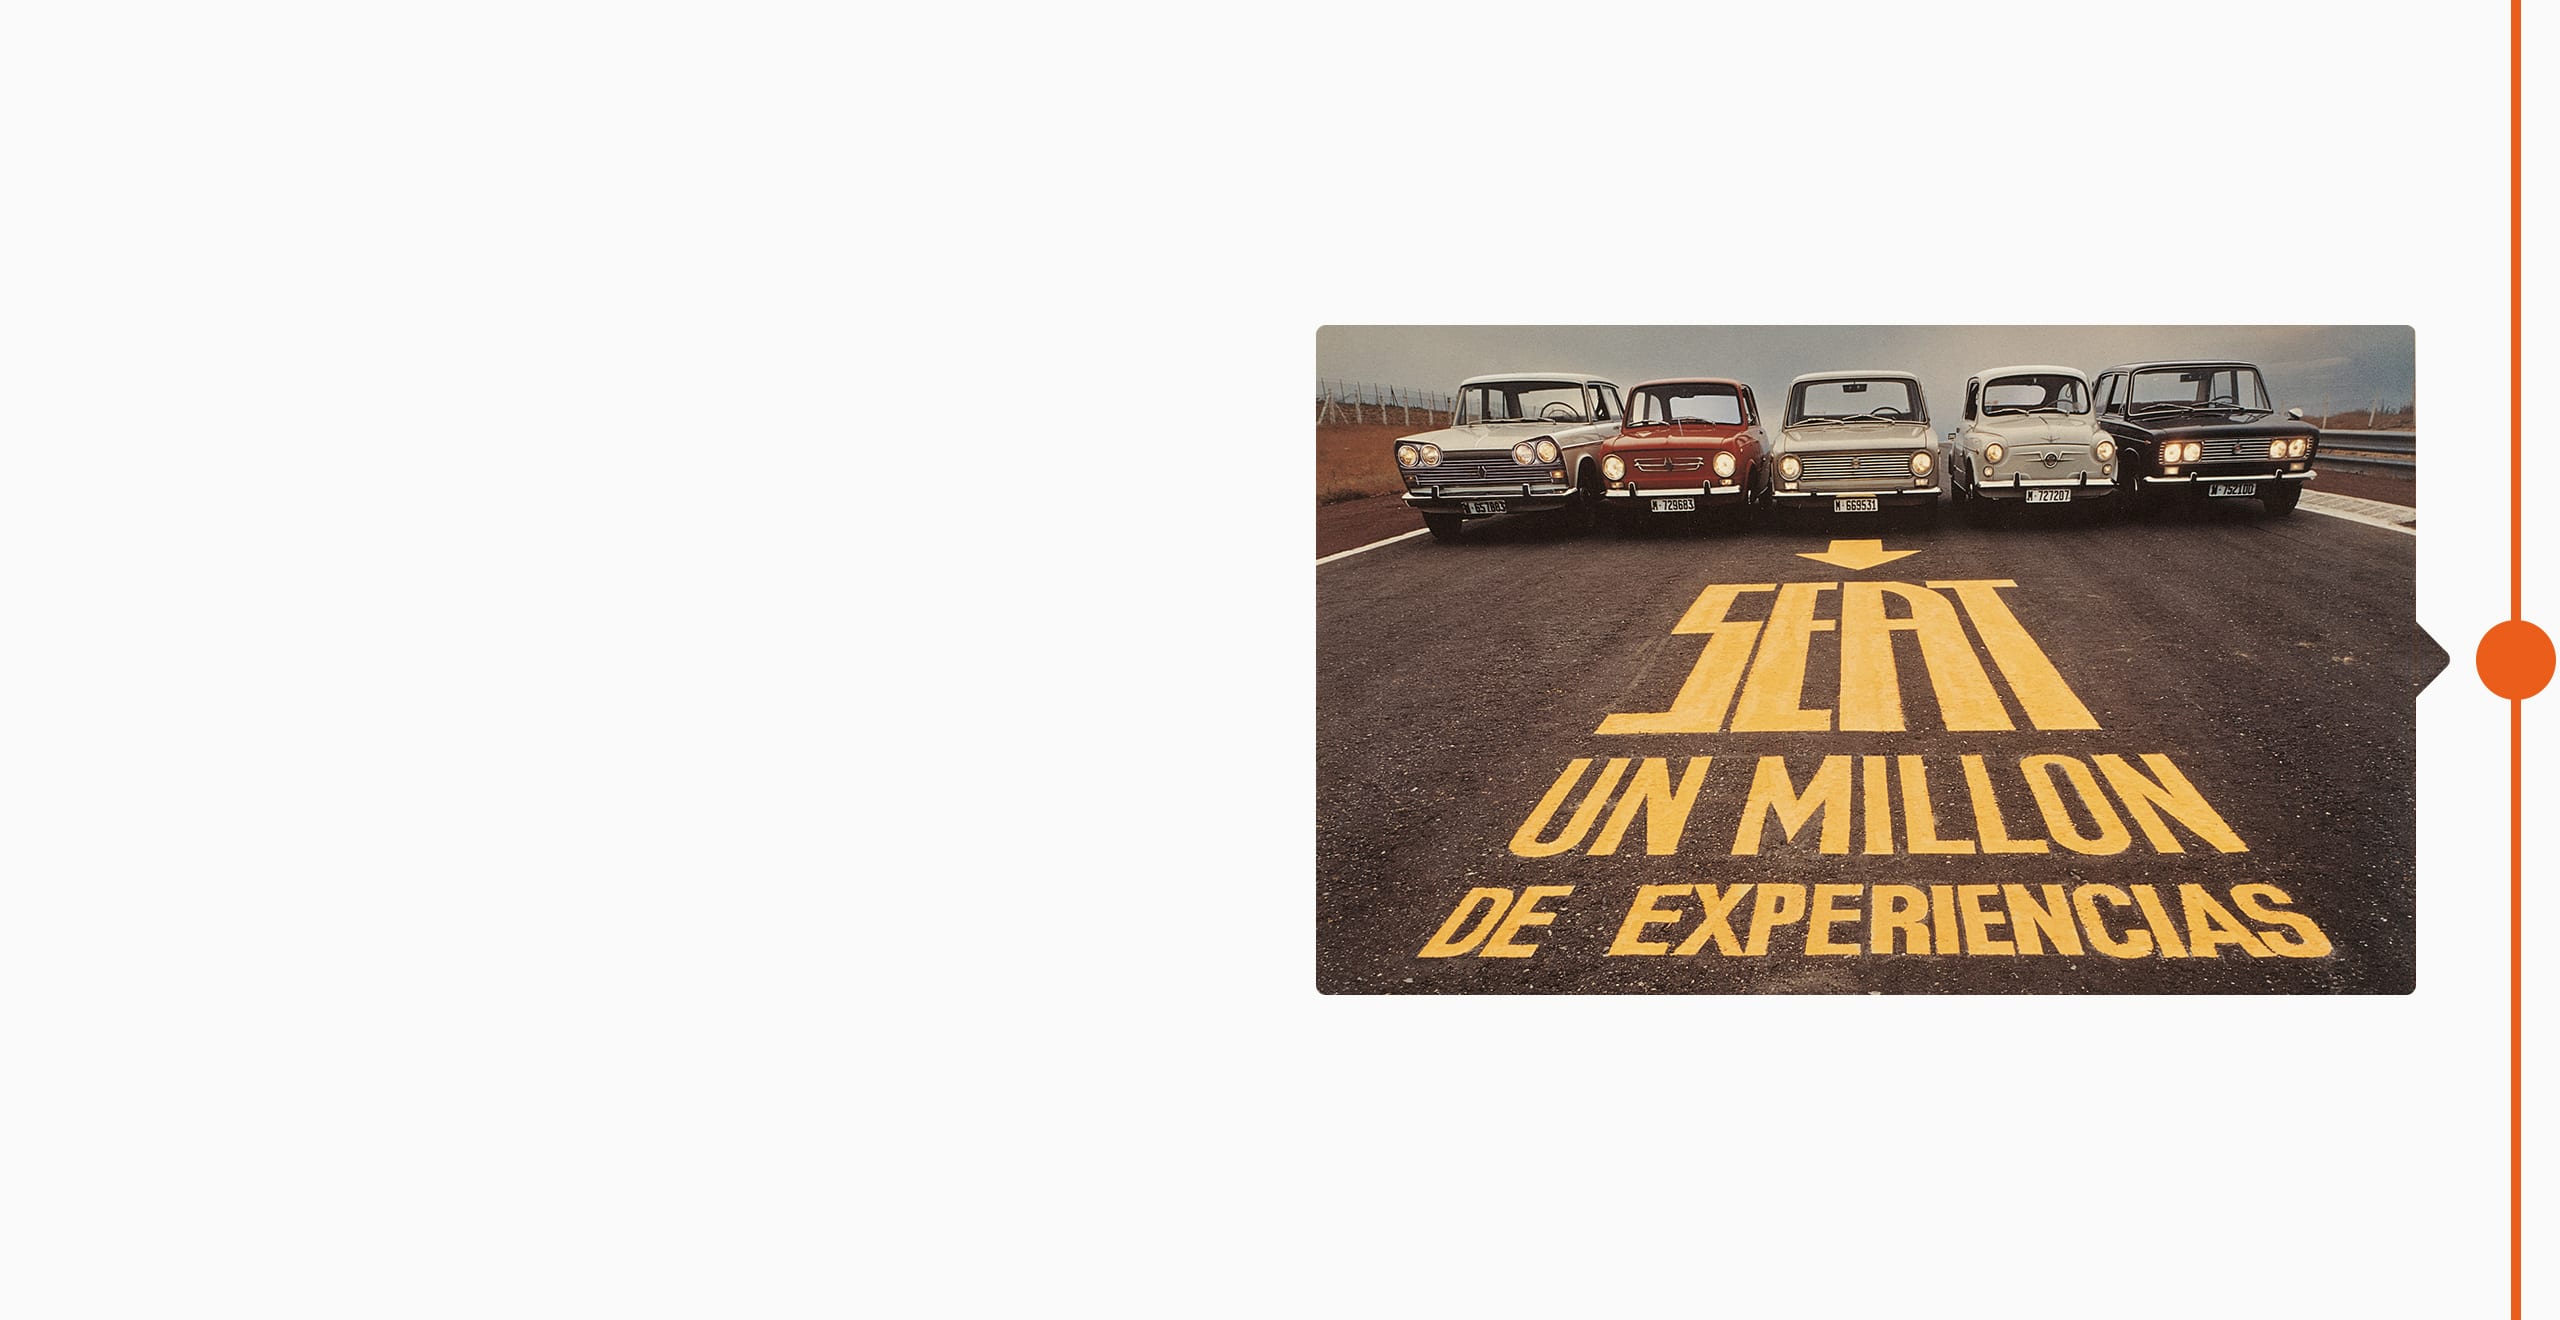 SEAT Markengeschichte 1974 - fünf Oldtimer aufgereiht auf einer Straße eine Million Erlebnisse